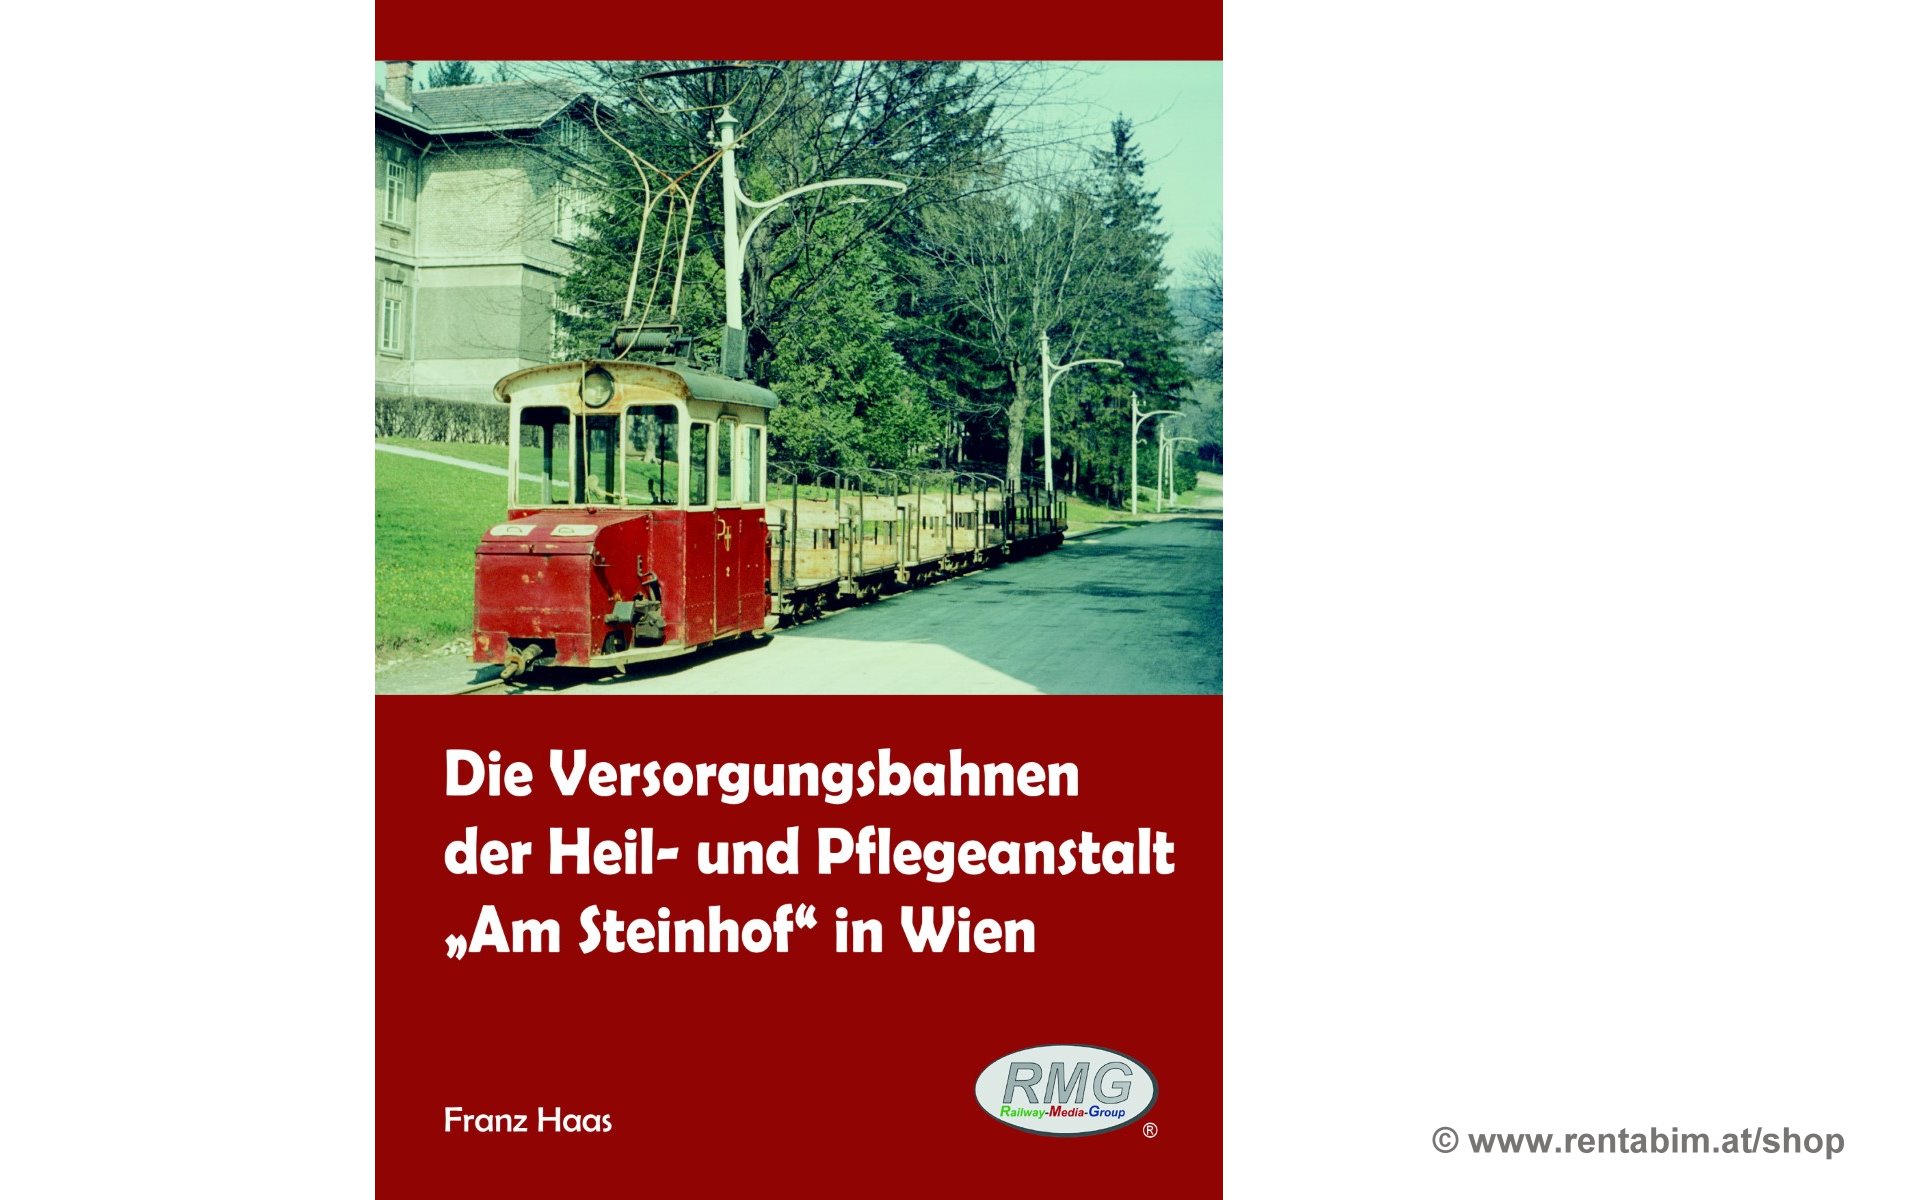 Die Versorgungsbahnen "Am Steinhof" (Wien) - Webshop des VEF auf www.rentabim.at